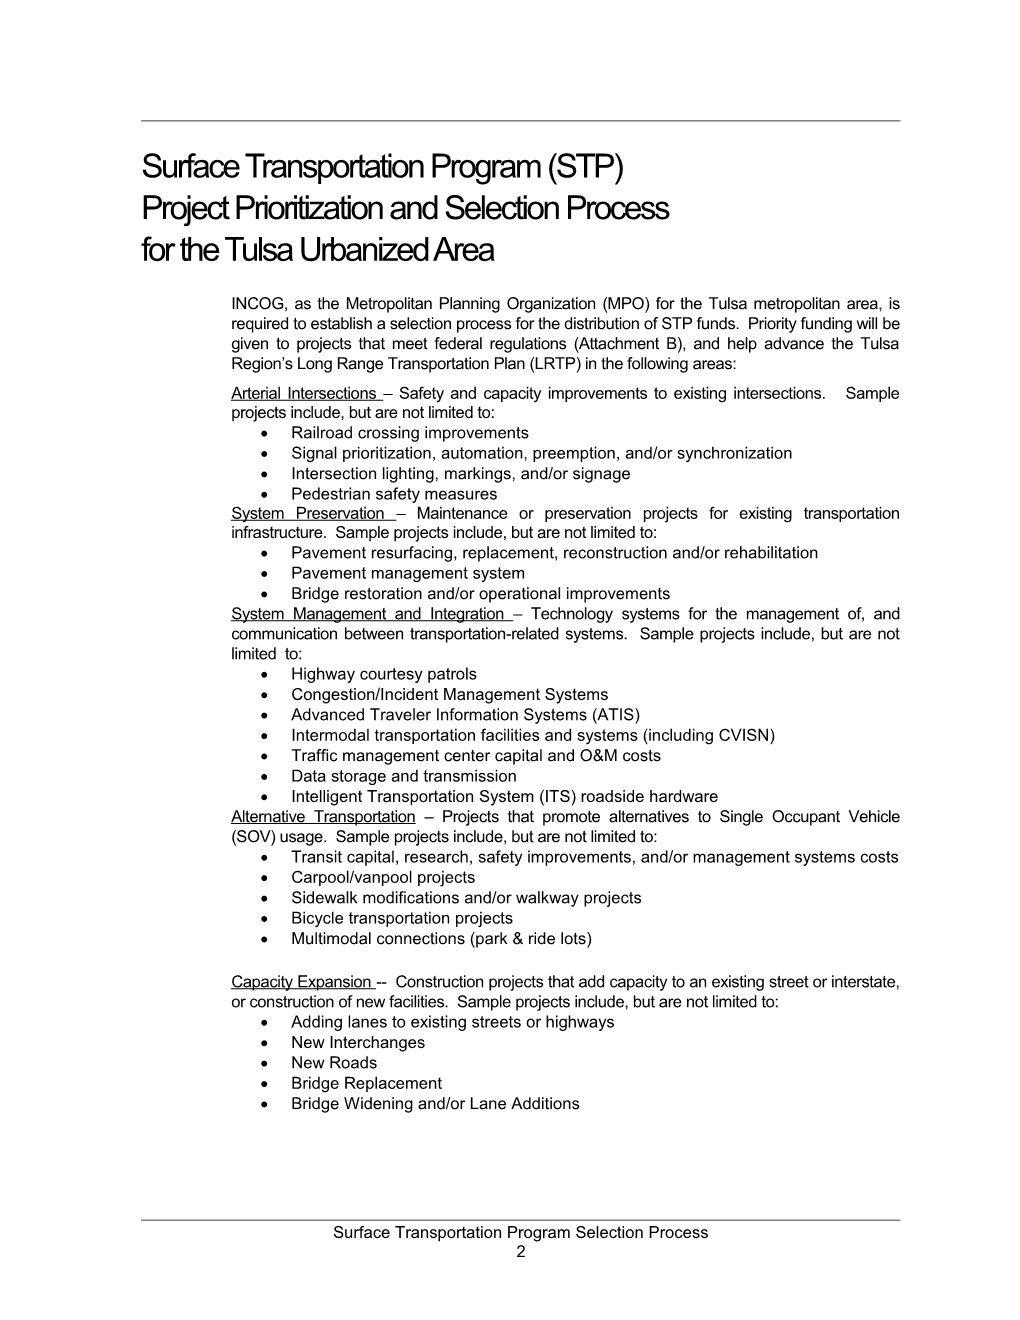 Surface Transportation Program (STP) Project Prioritization & Selection Process